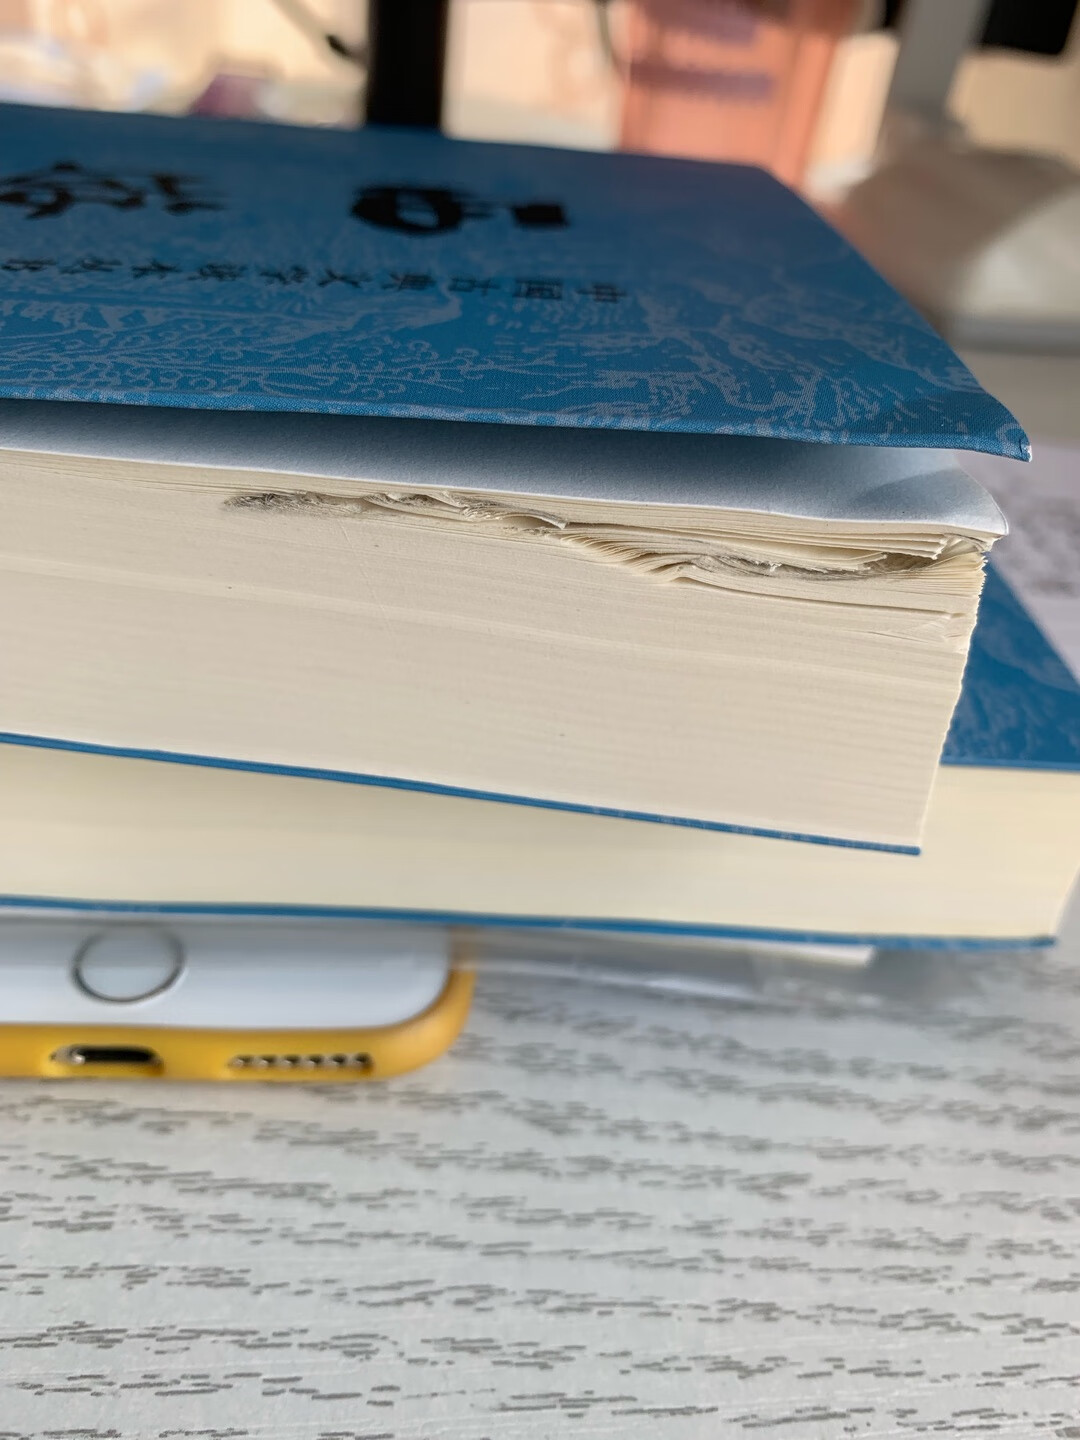 外包装完好，拆开包装里面有一本书的左上角有皱褶